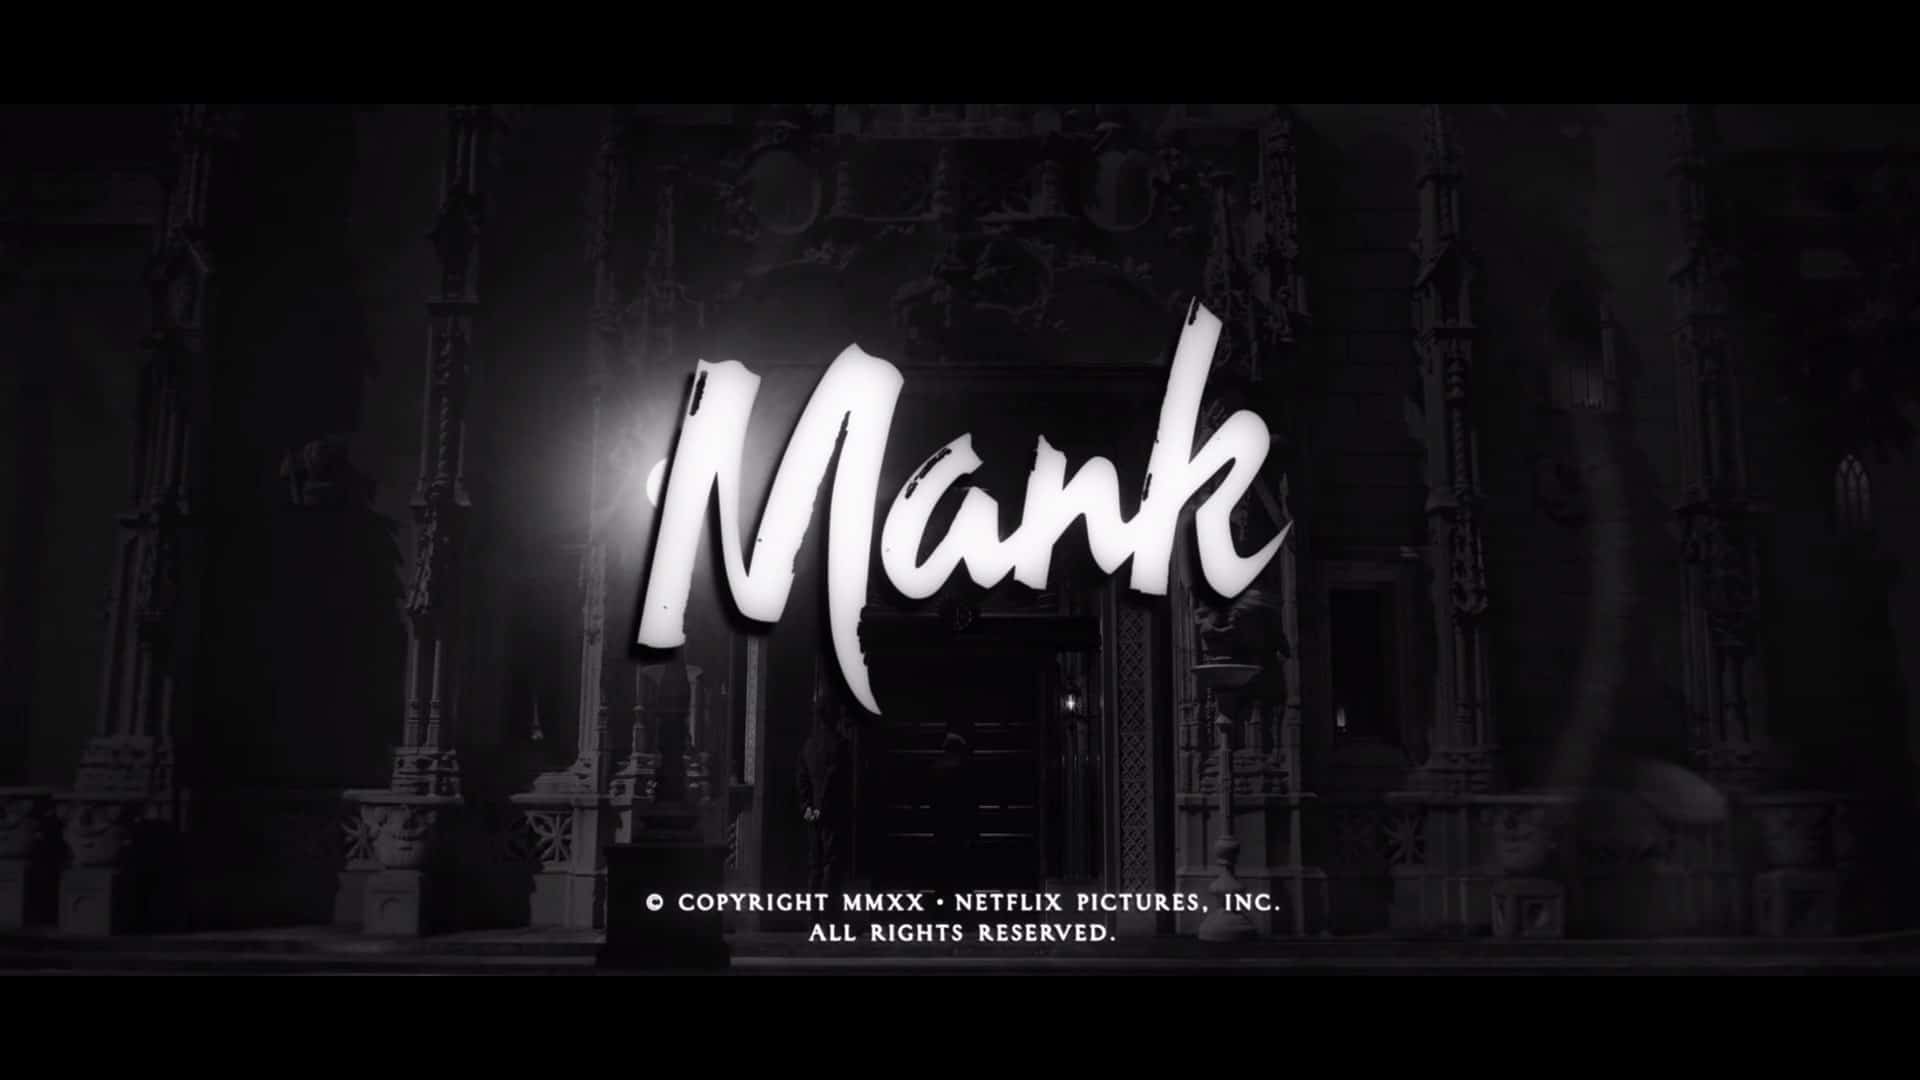 Netflix MANK Official Trailer, Netflix Biography Film, Netflix Drama Film, Coming to Netflix in December 2020